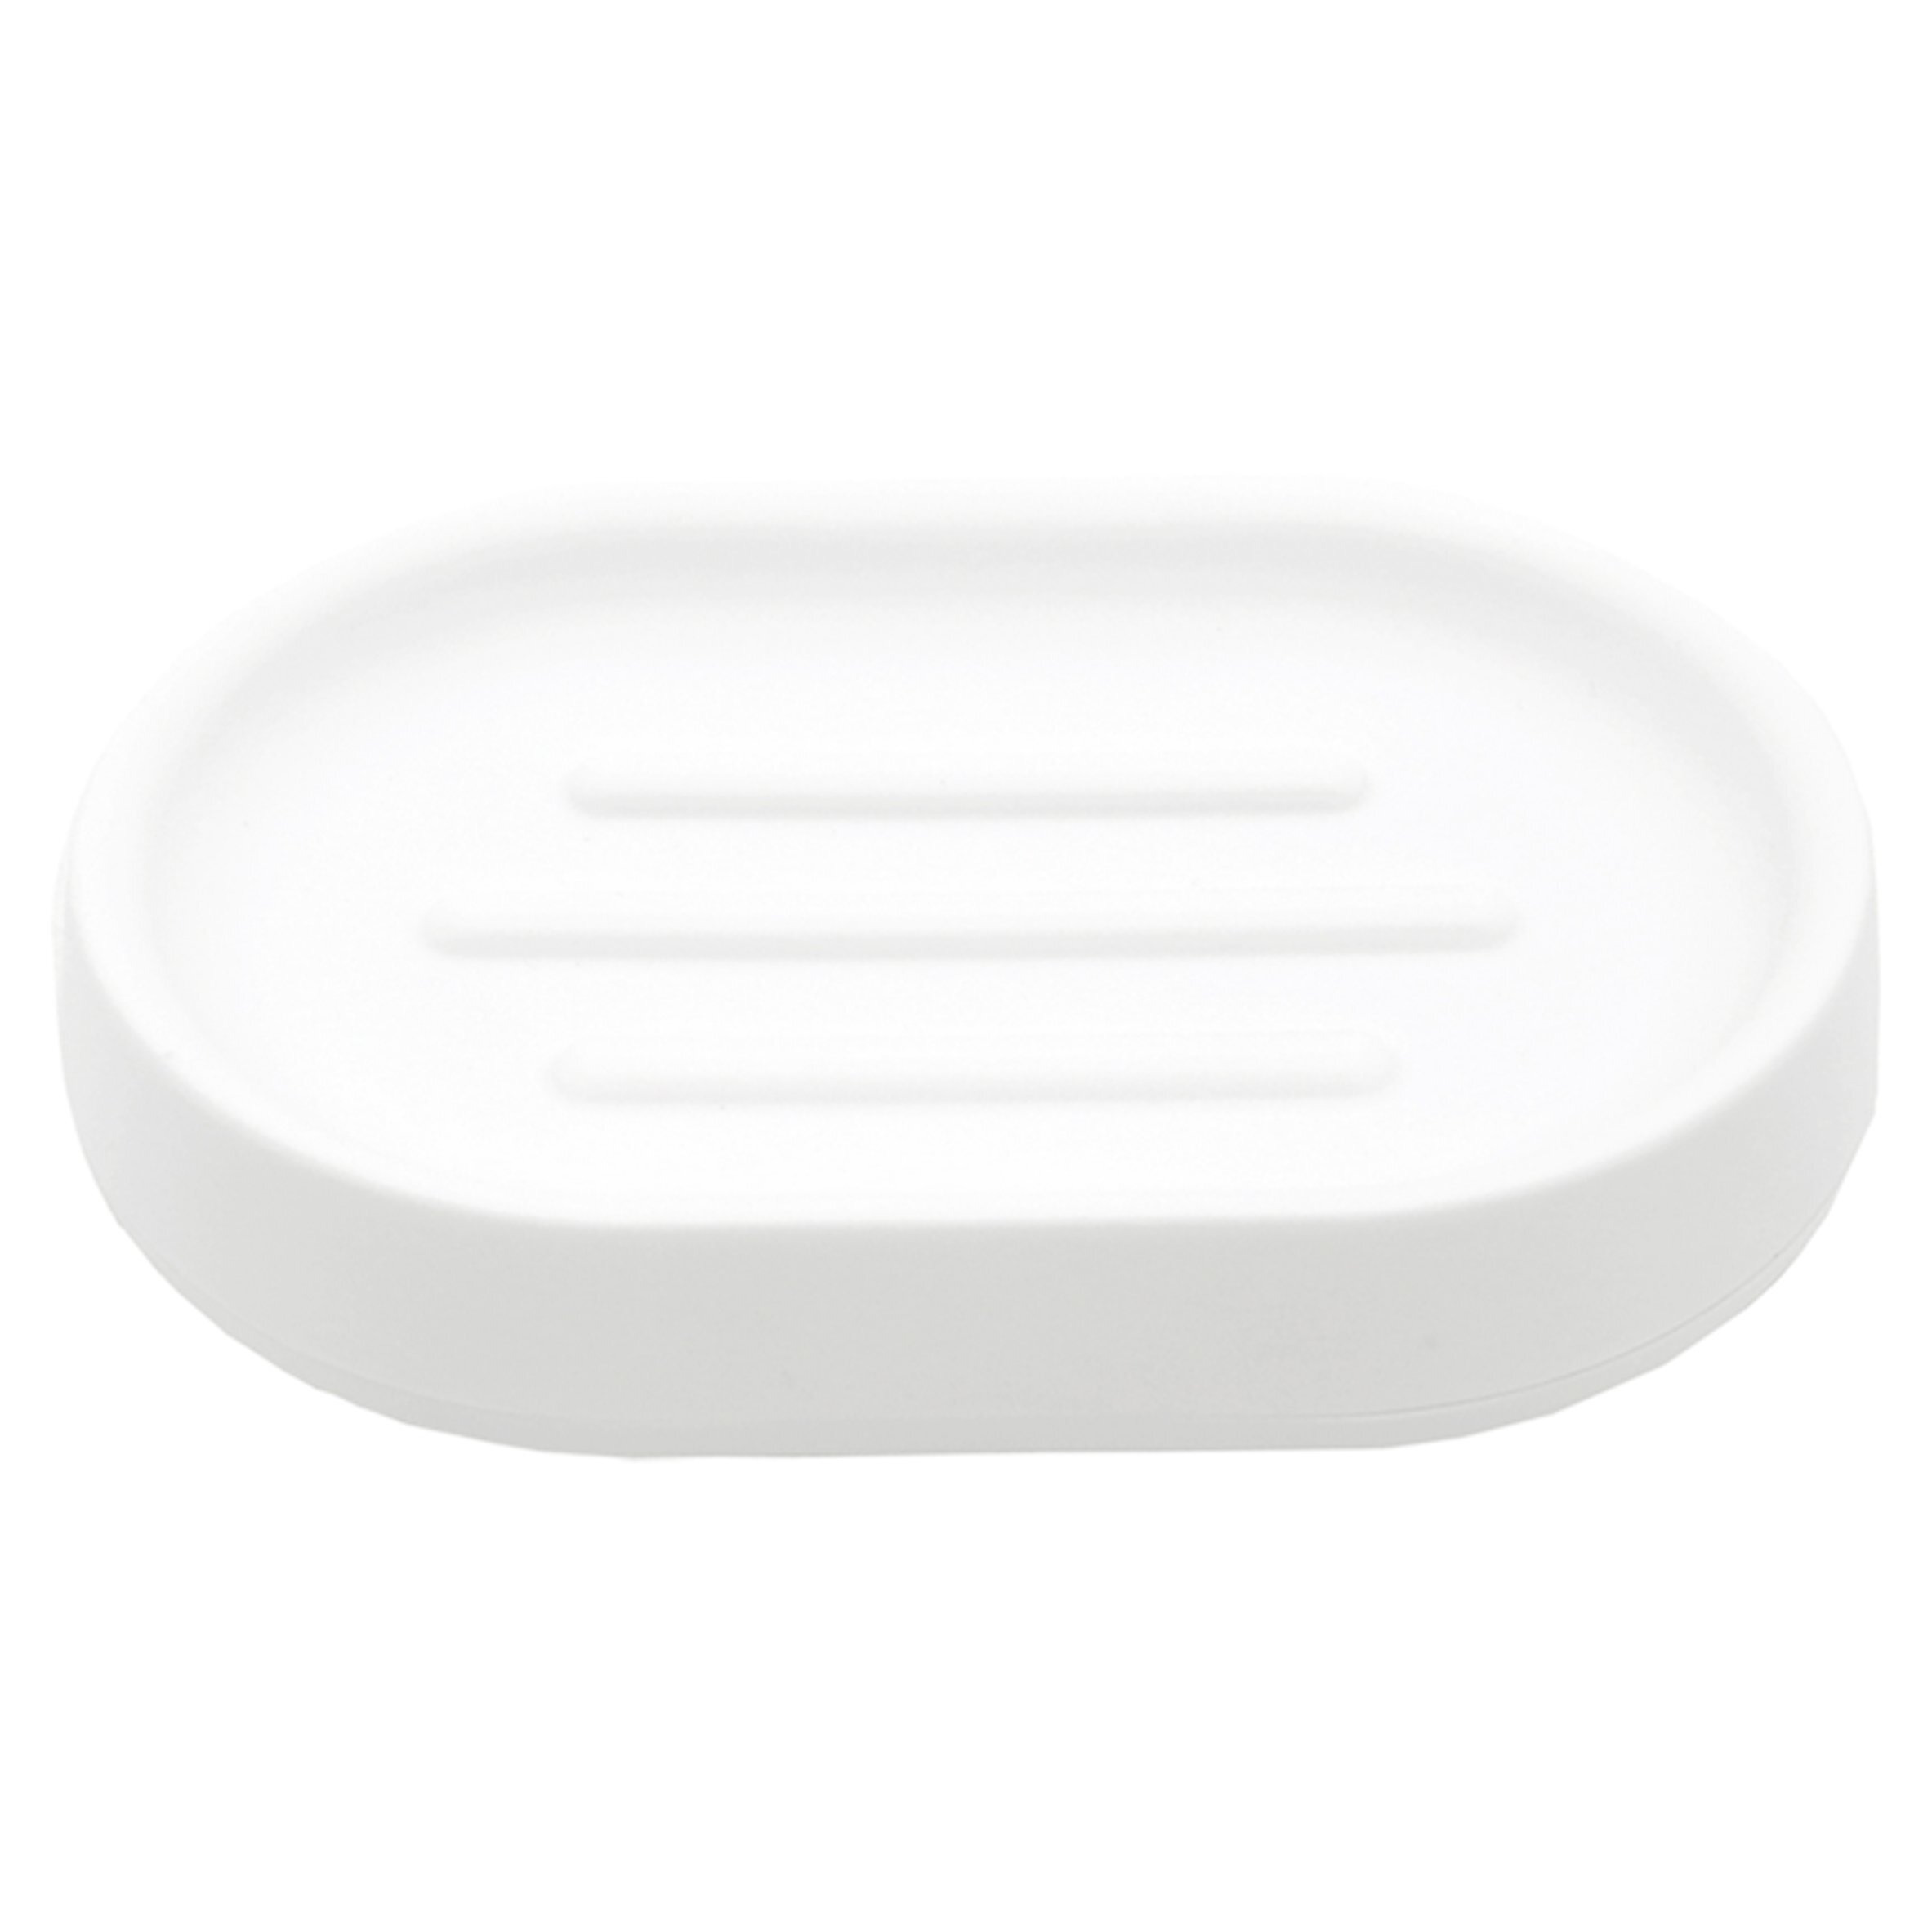 Tesco White Plastic Soap Dish